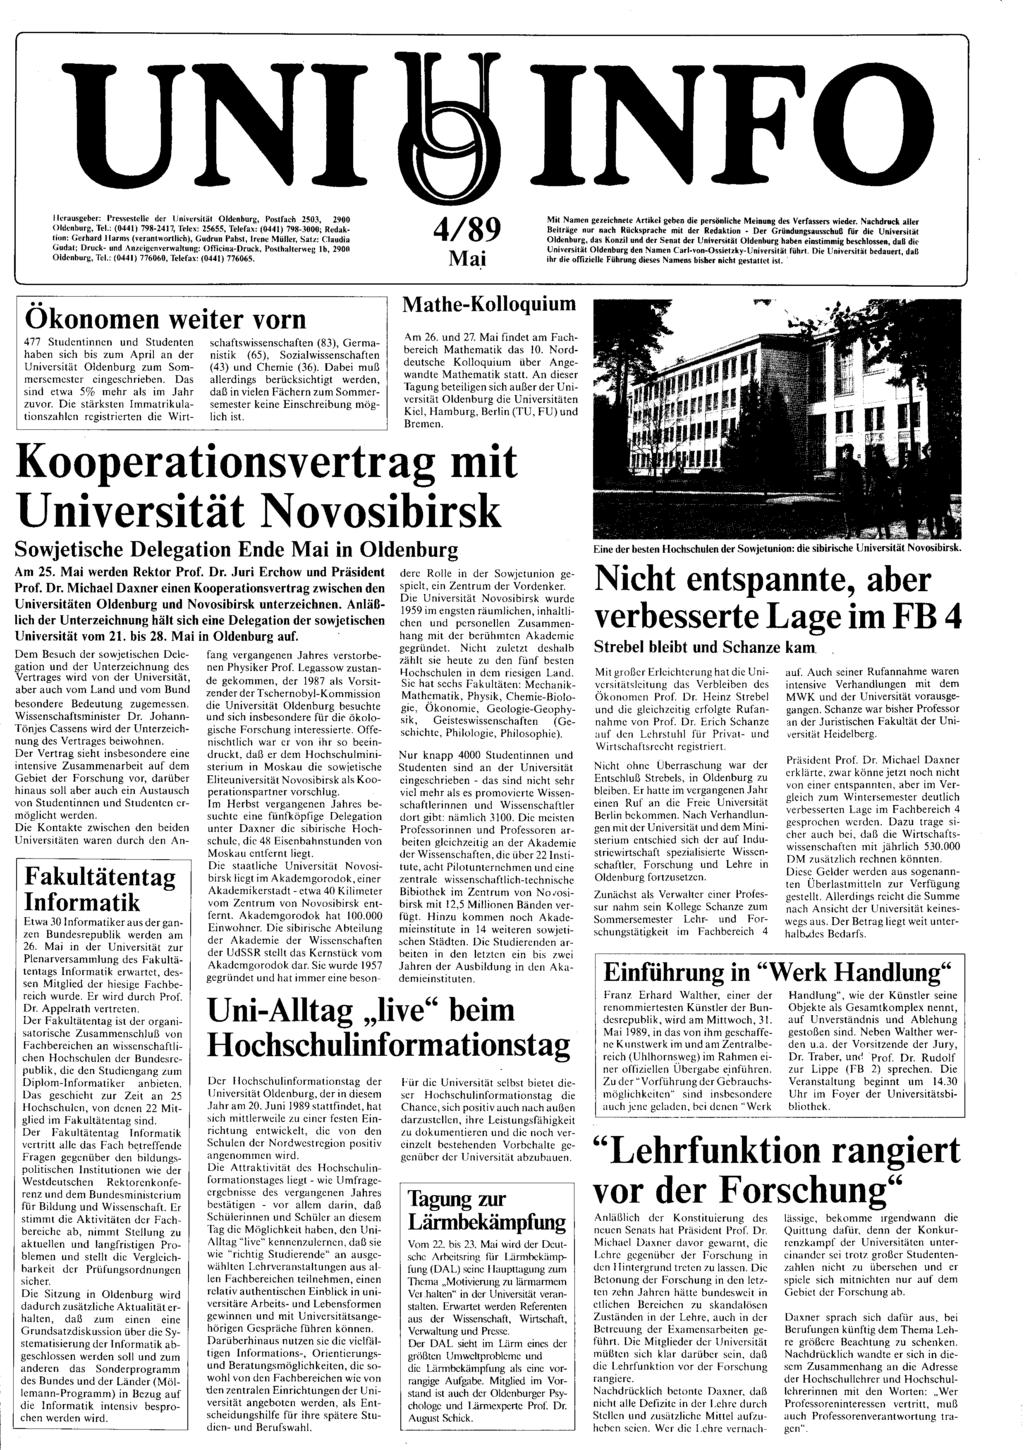 UNI Herausgeber: Pressestelle der Universität Oldenburg, Postfach 2503, 2900 Oldenburg, Tel.